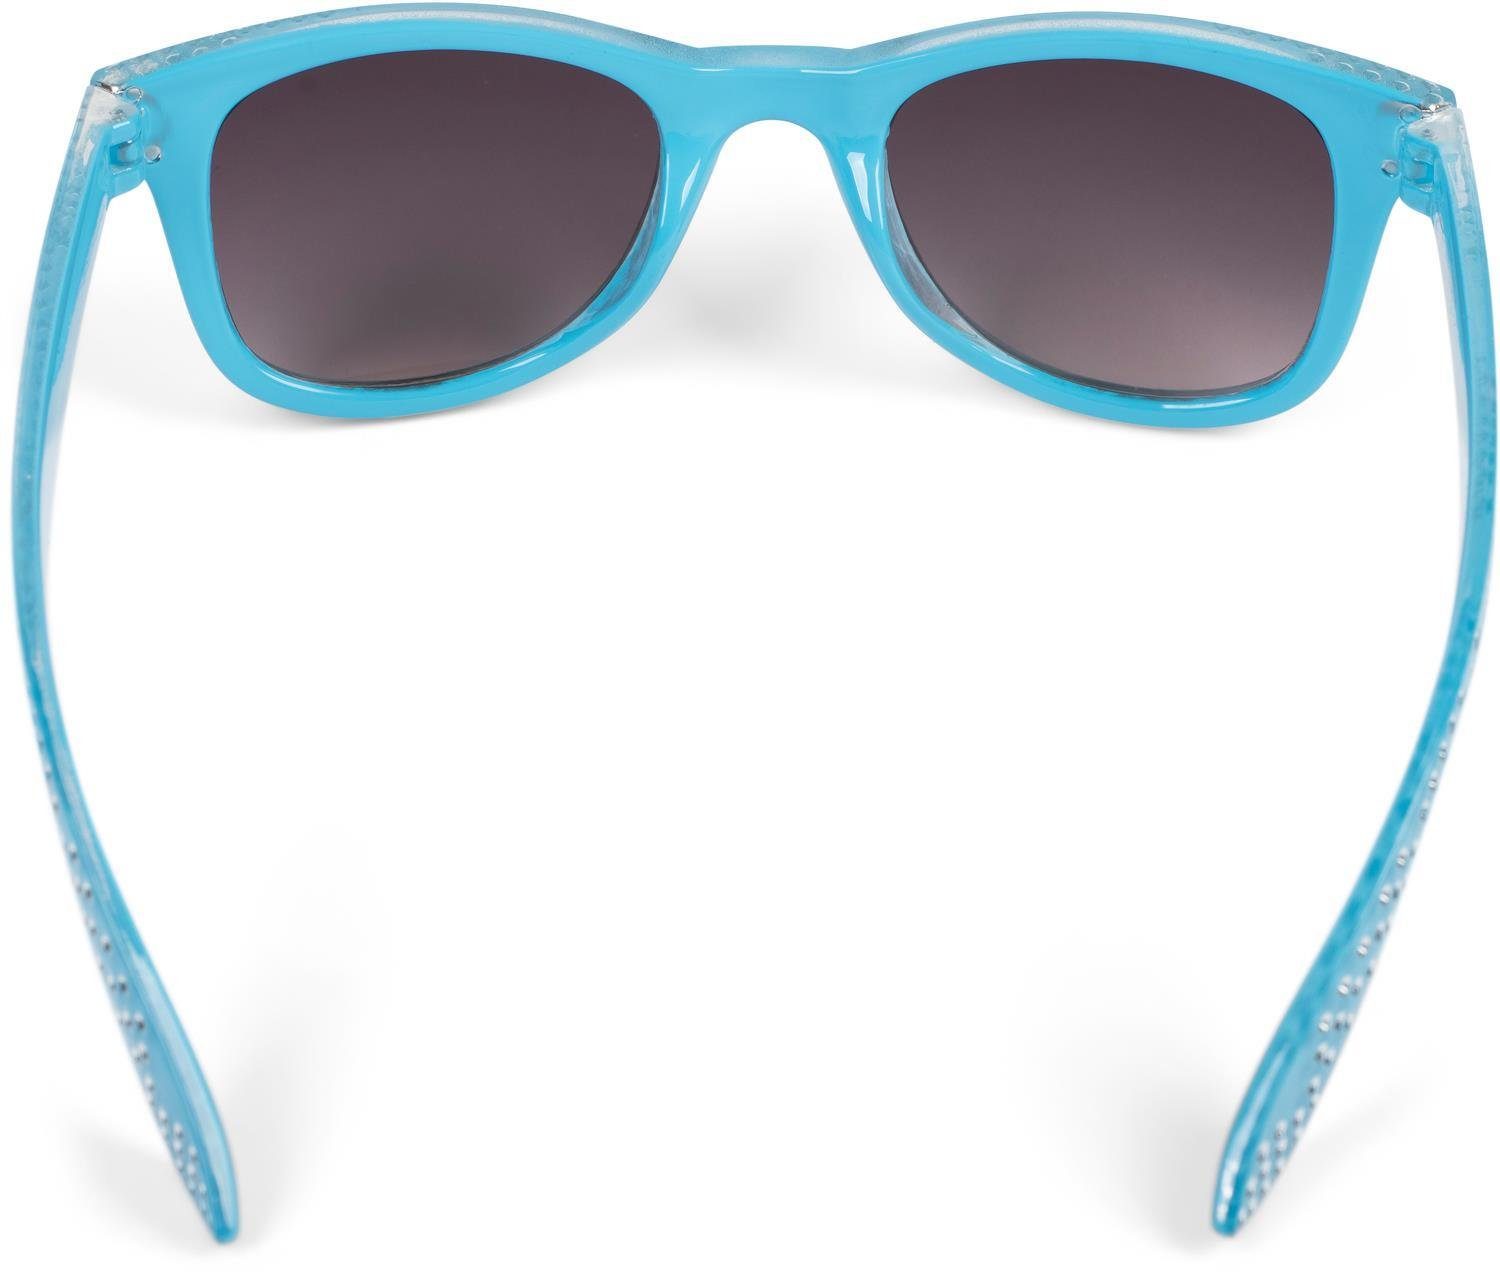 (1-St) Gestell styleBREAKER Grau Glas / Verlauf Blau Getönt Sonnenbrille